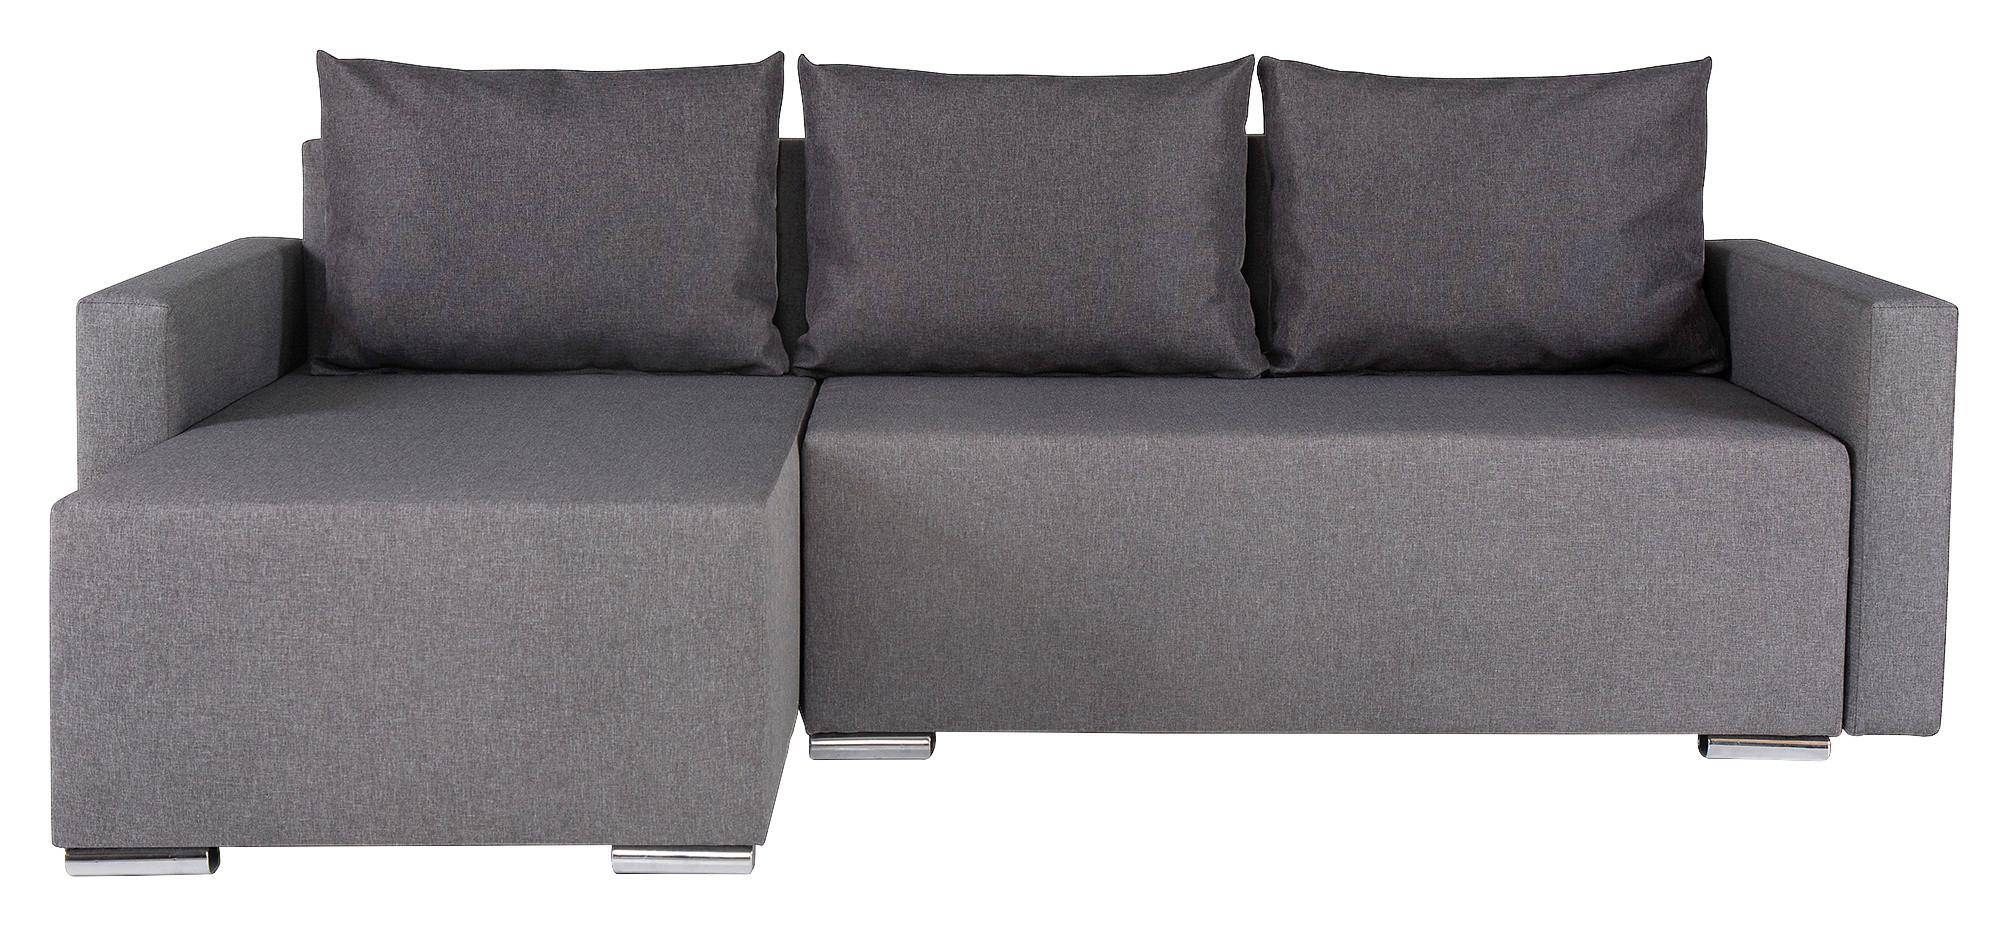 Sedežna Garnitura Lena S, Siva, Z Ležiščem In Predalom - srebrne barve/temno siva, Moderno (212/129cm) - Top ponudba